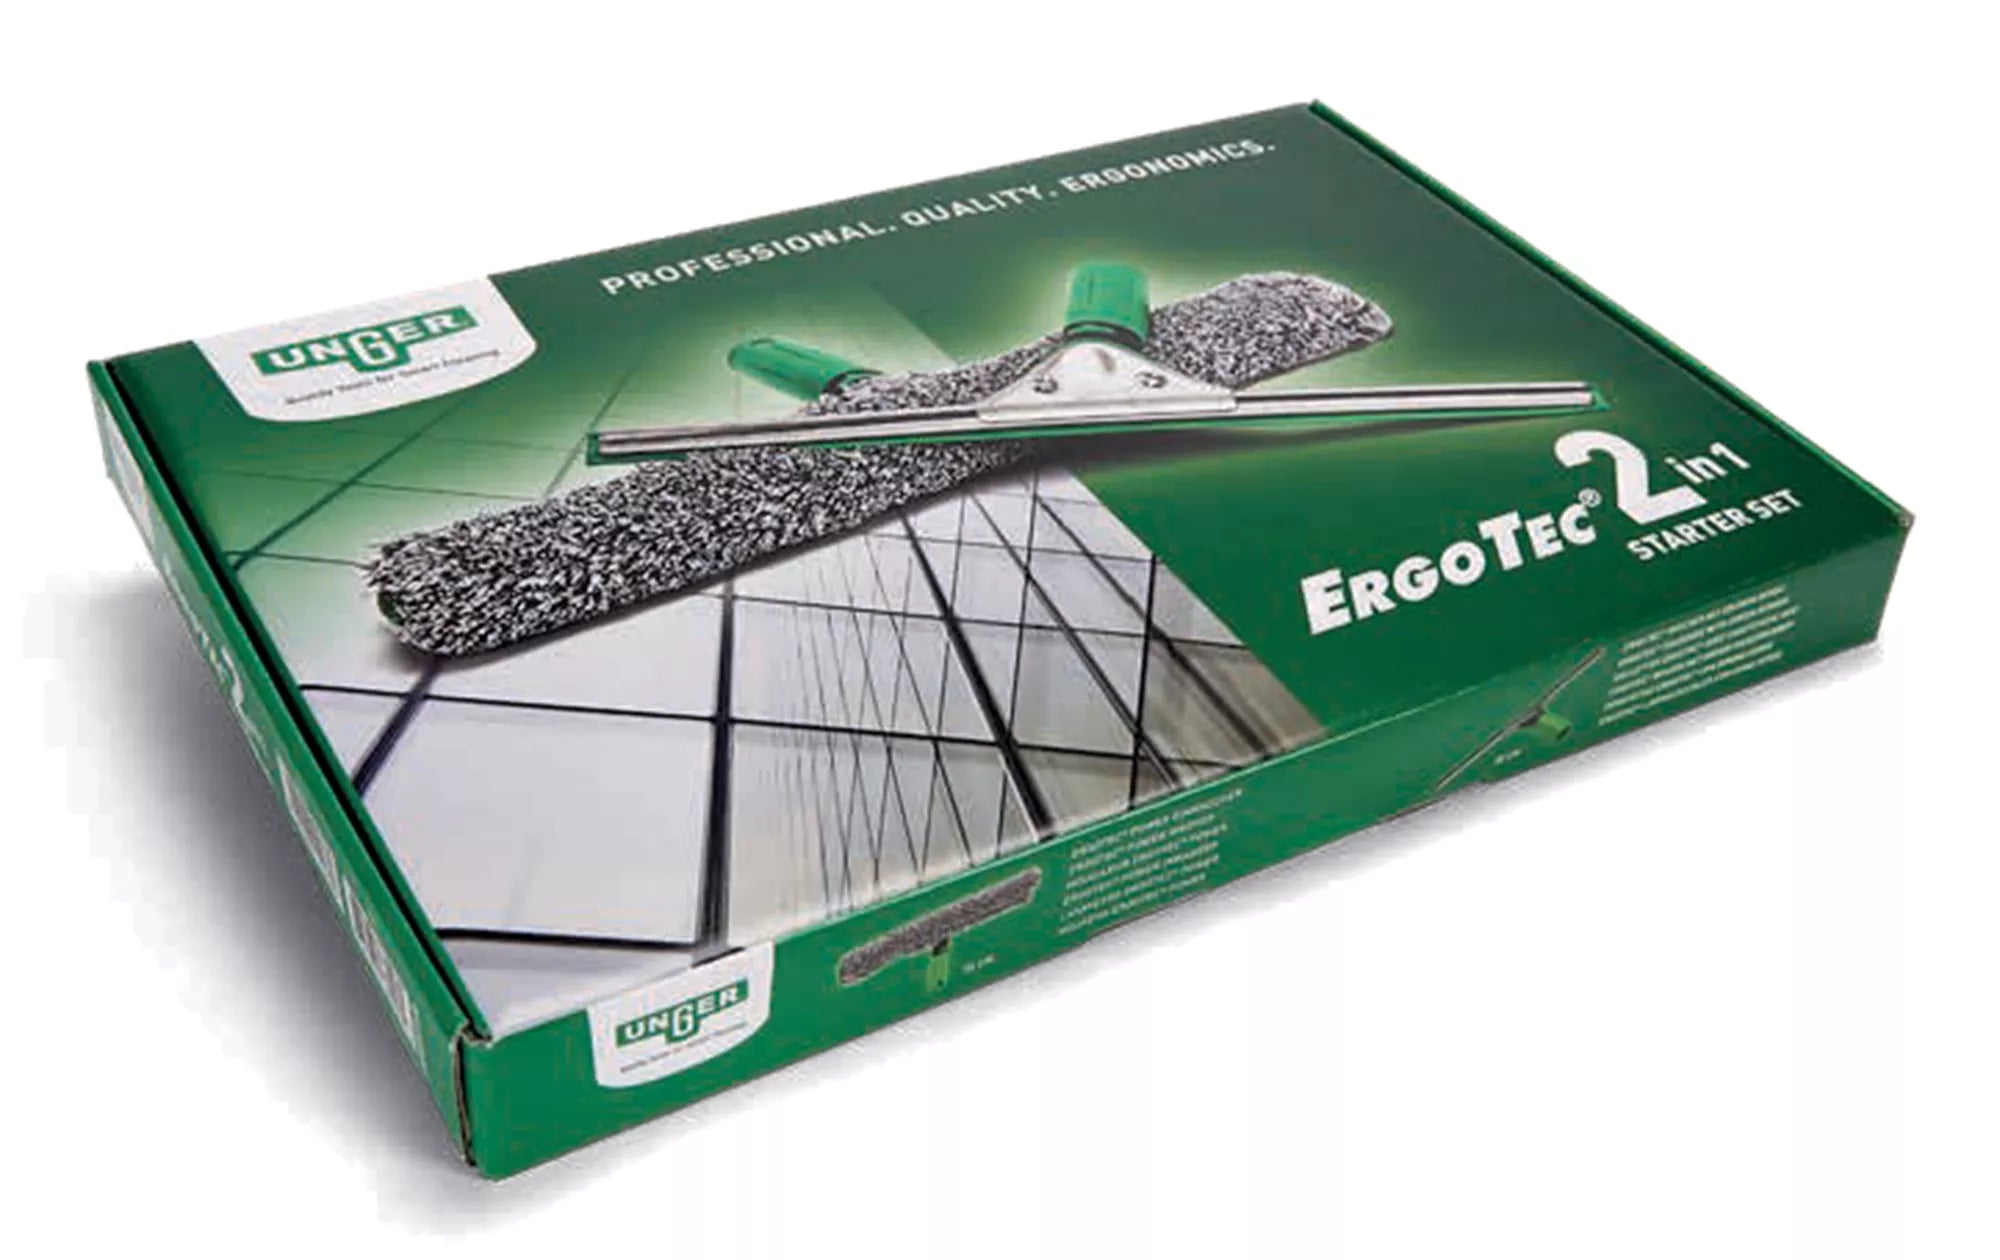 UNGER Professional Ergotec 2-in-1 Starter Kit